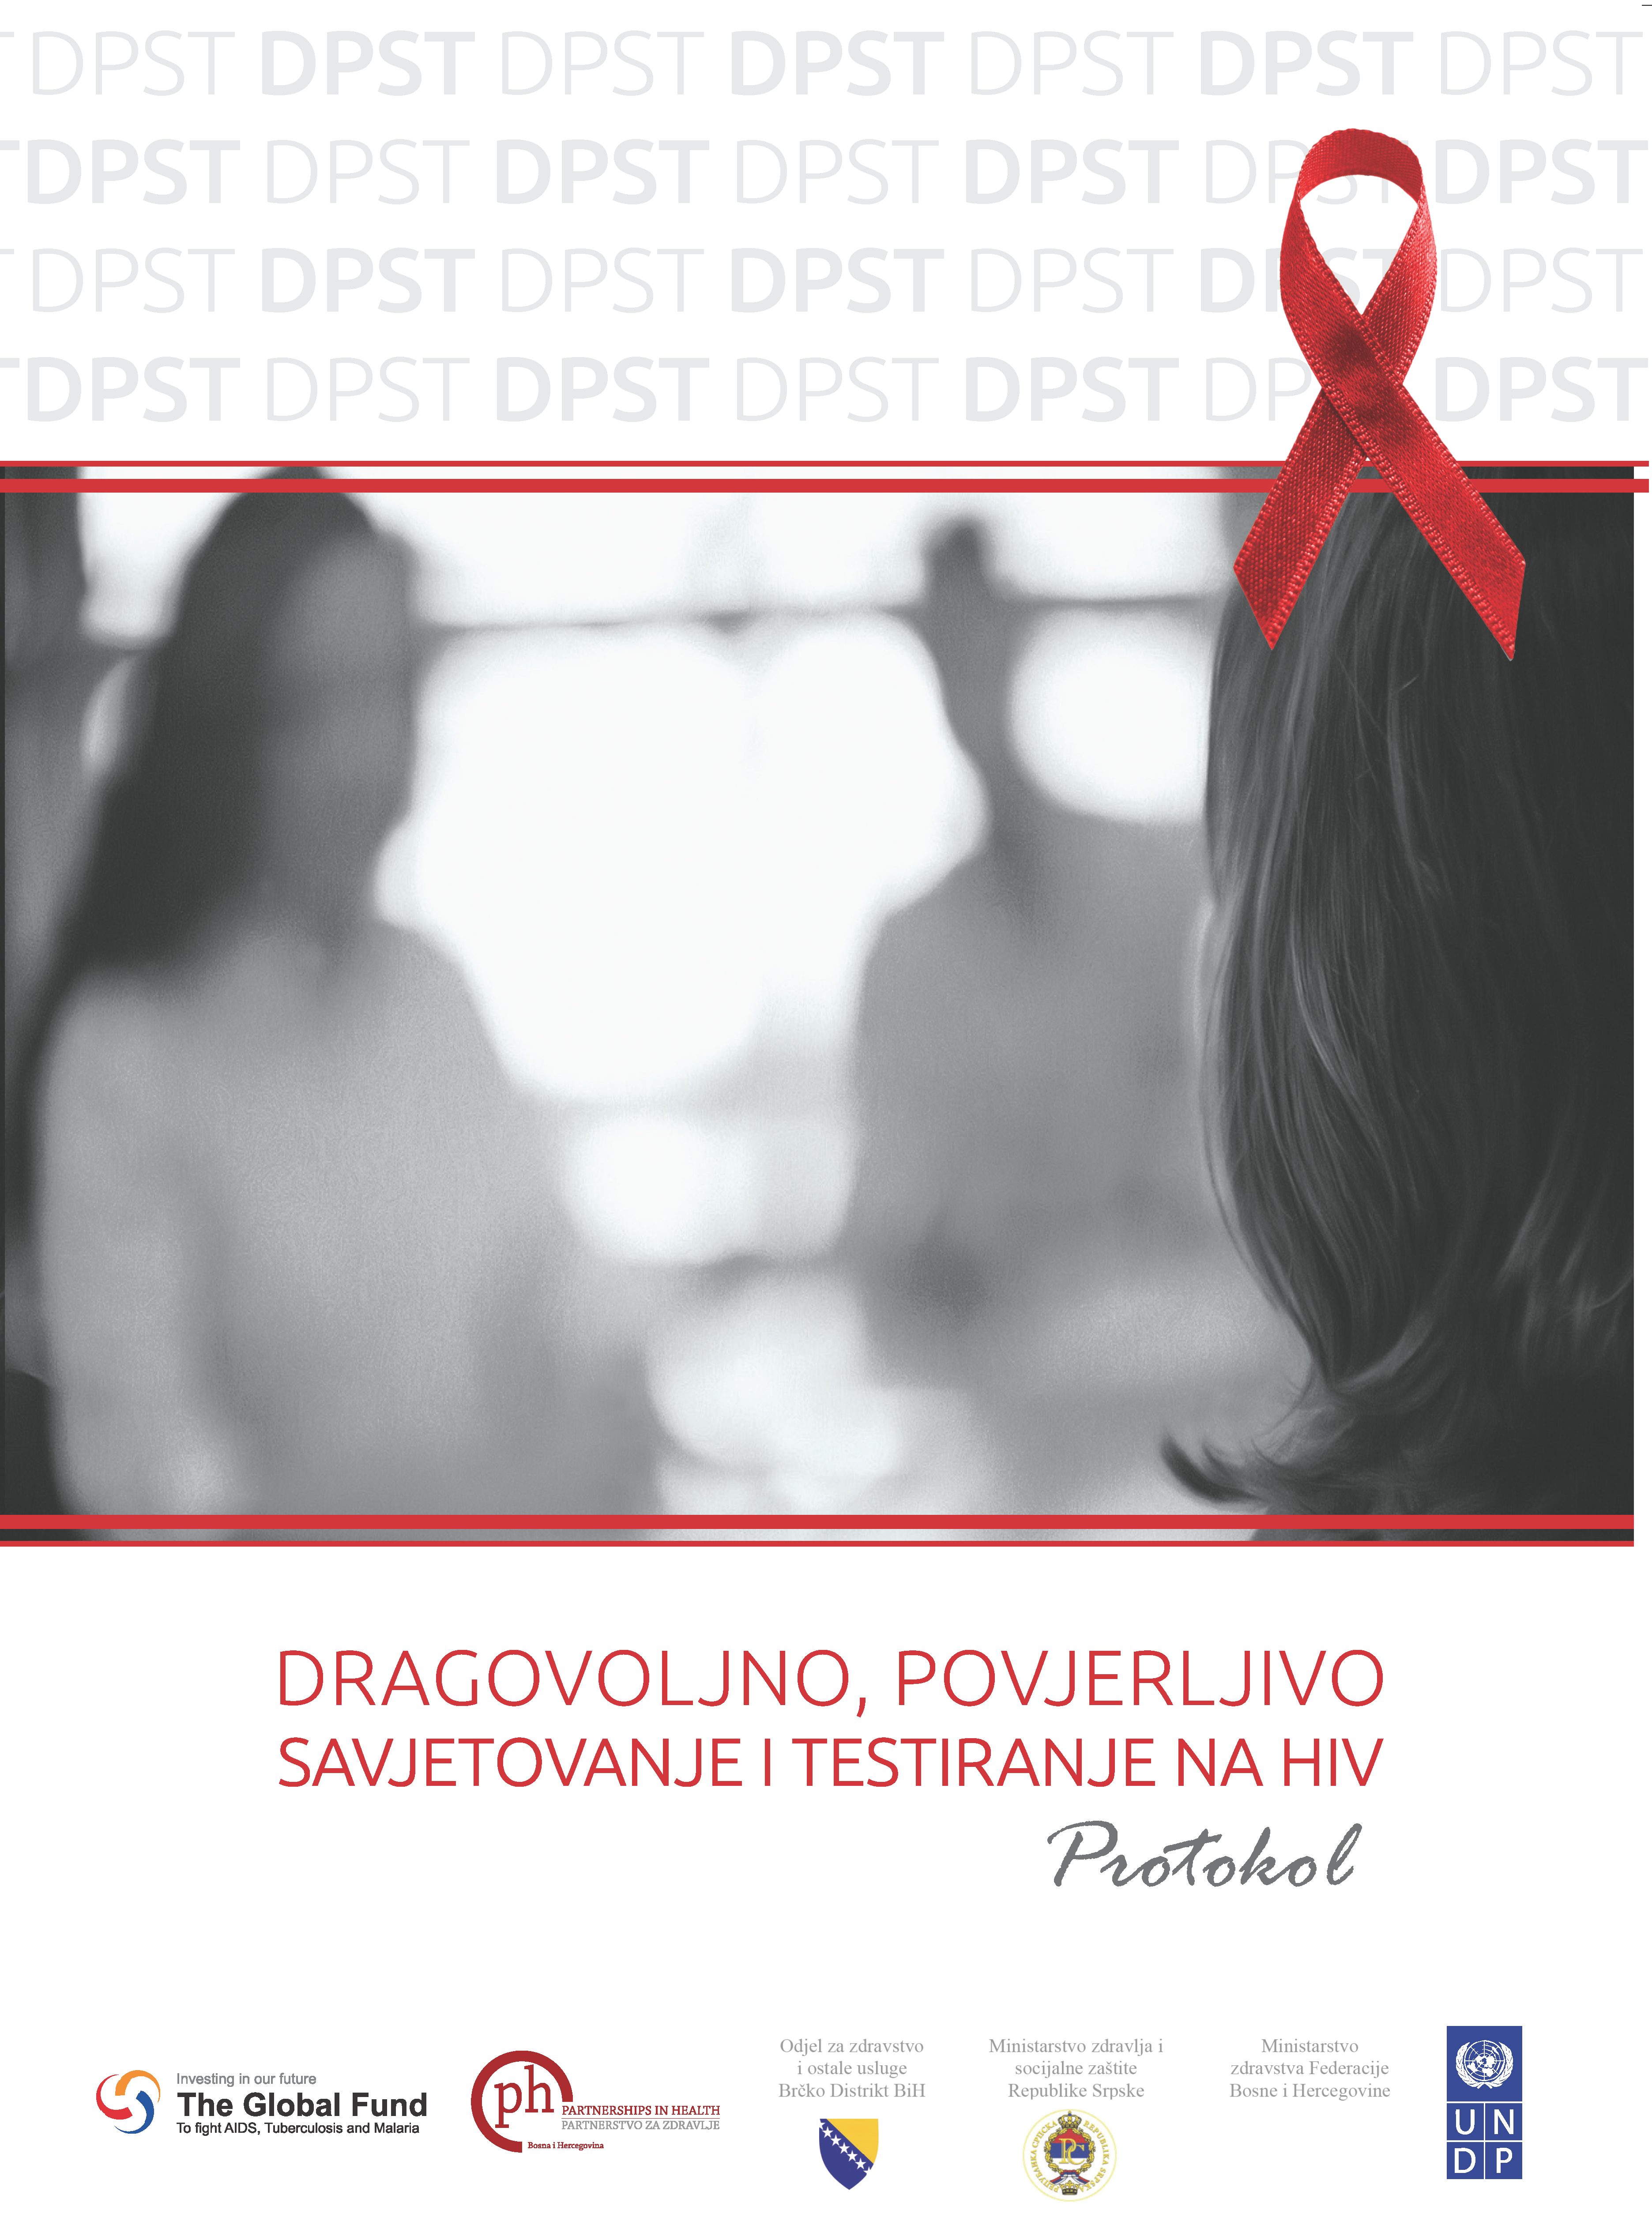 Protokol - Dragovoljno, povjerljivo savjetovanje i testiranje na HIV - Hrvatski jezik, 2013. godina